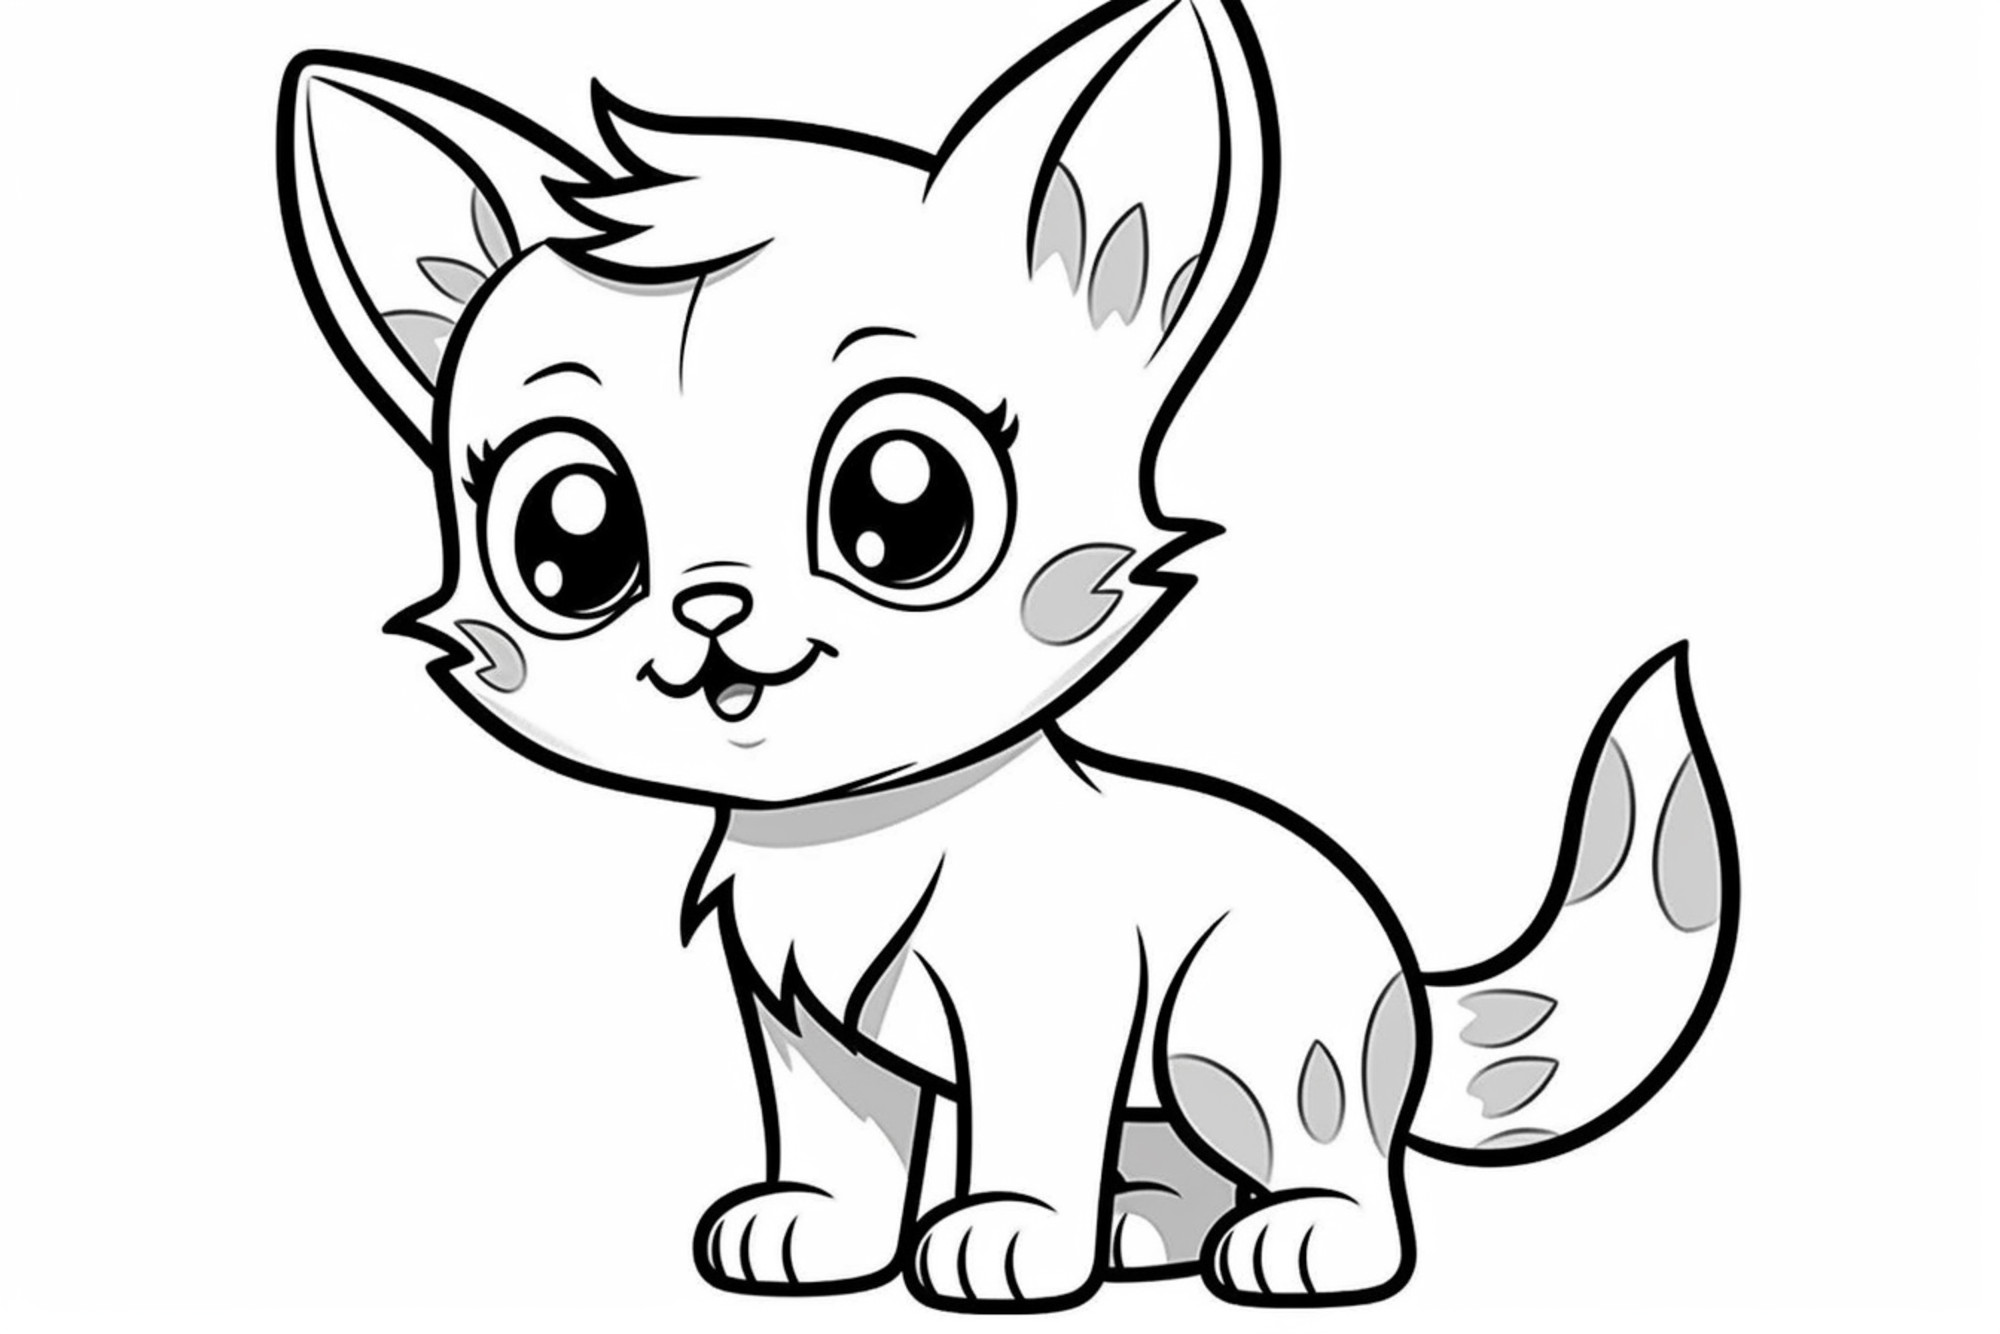 Раскраска для детей: котенок с большими глазами